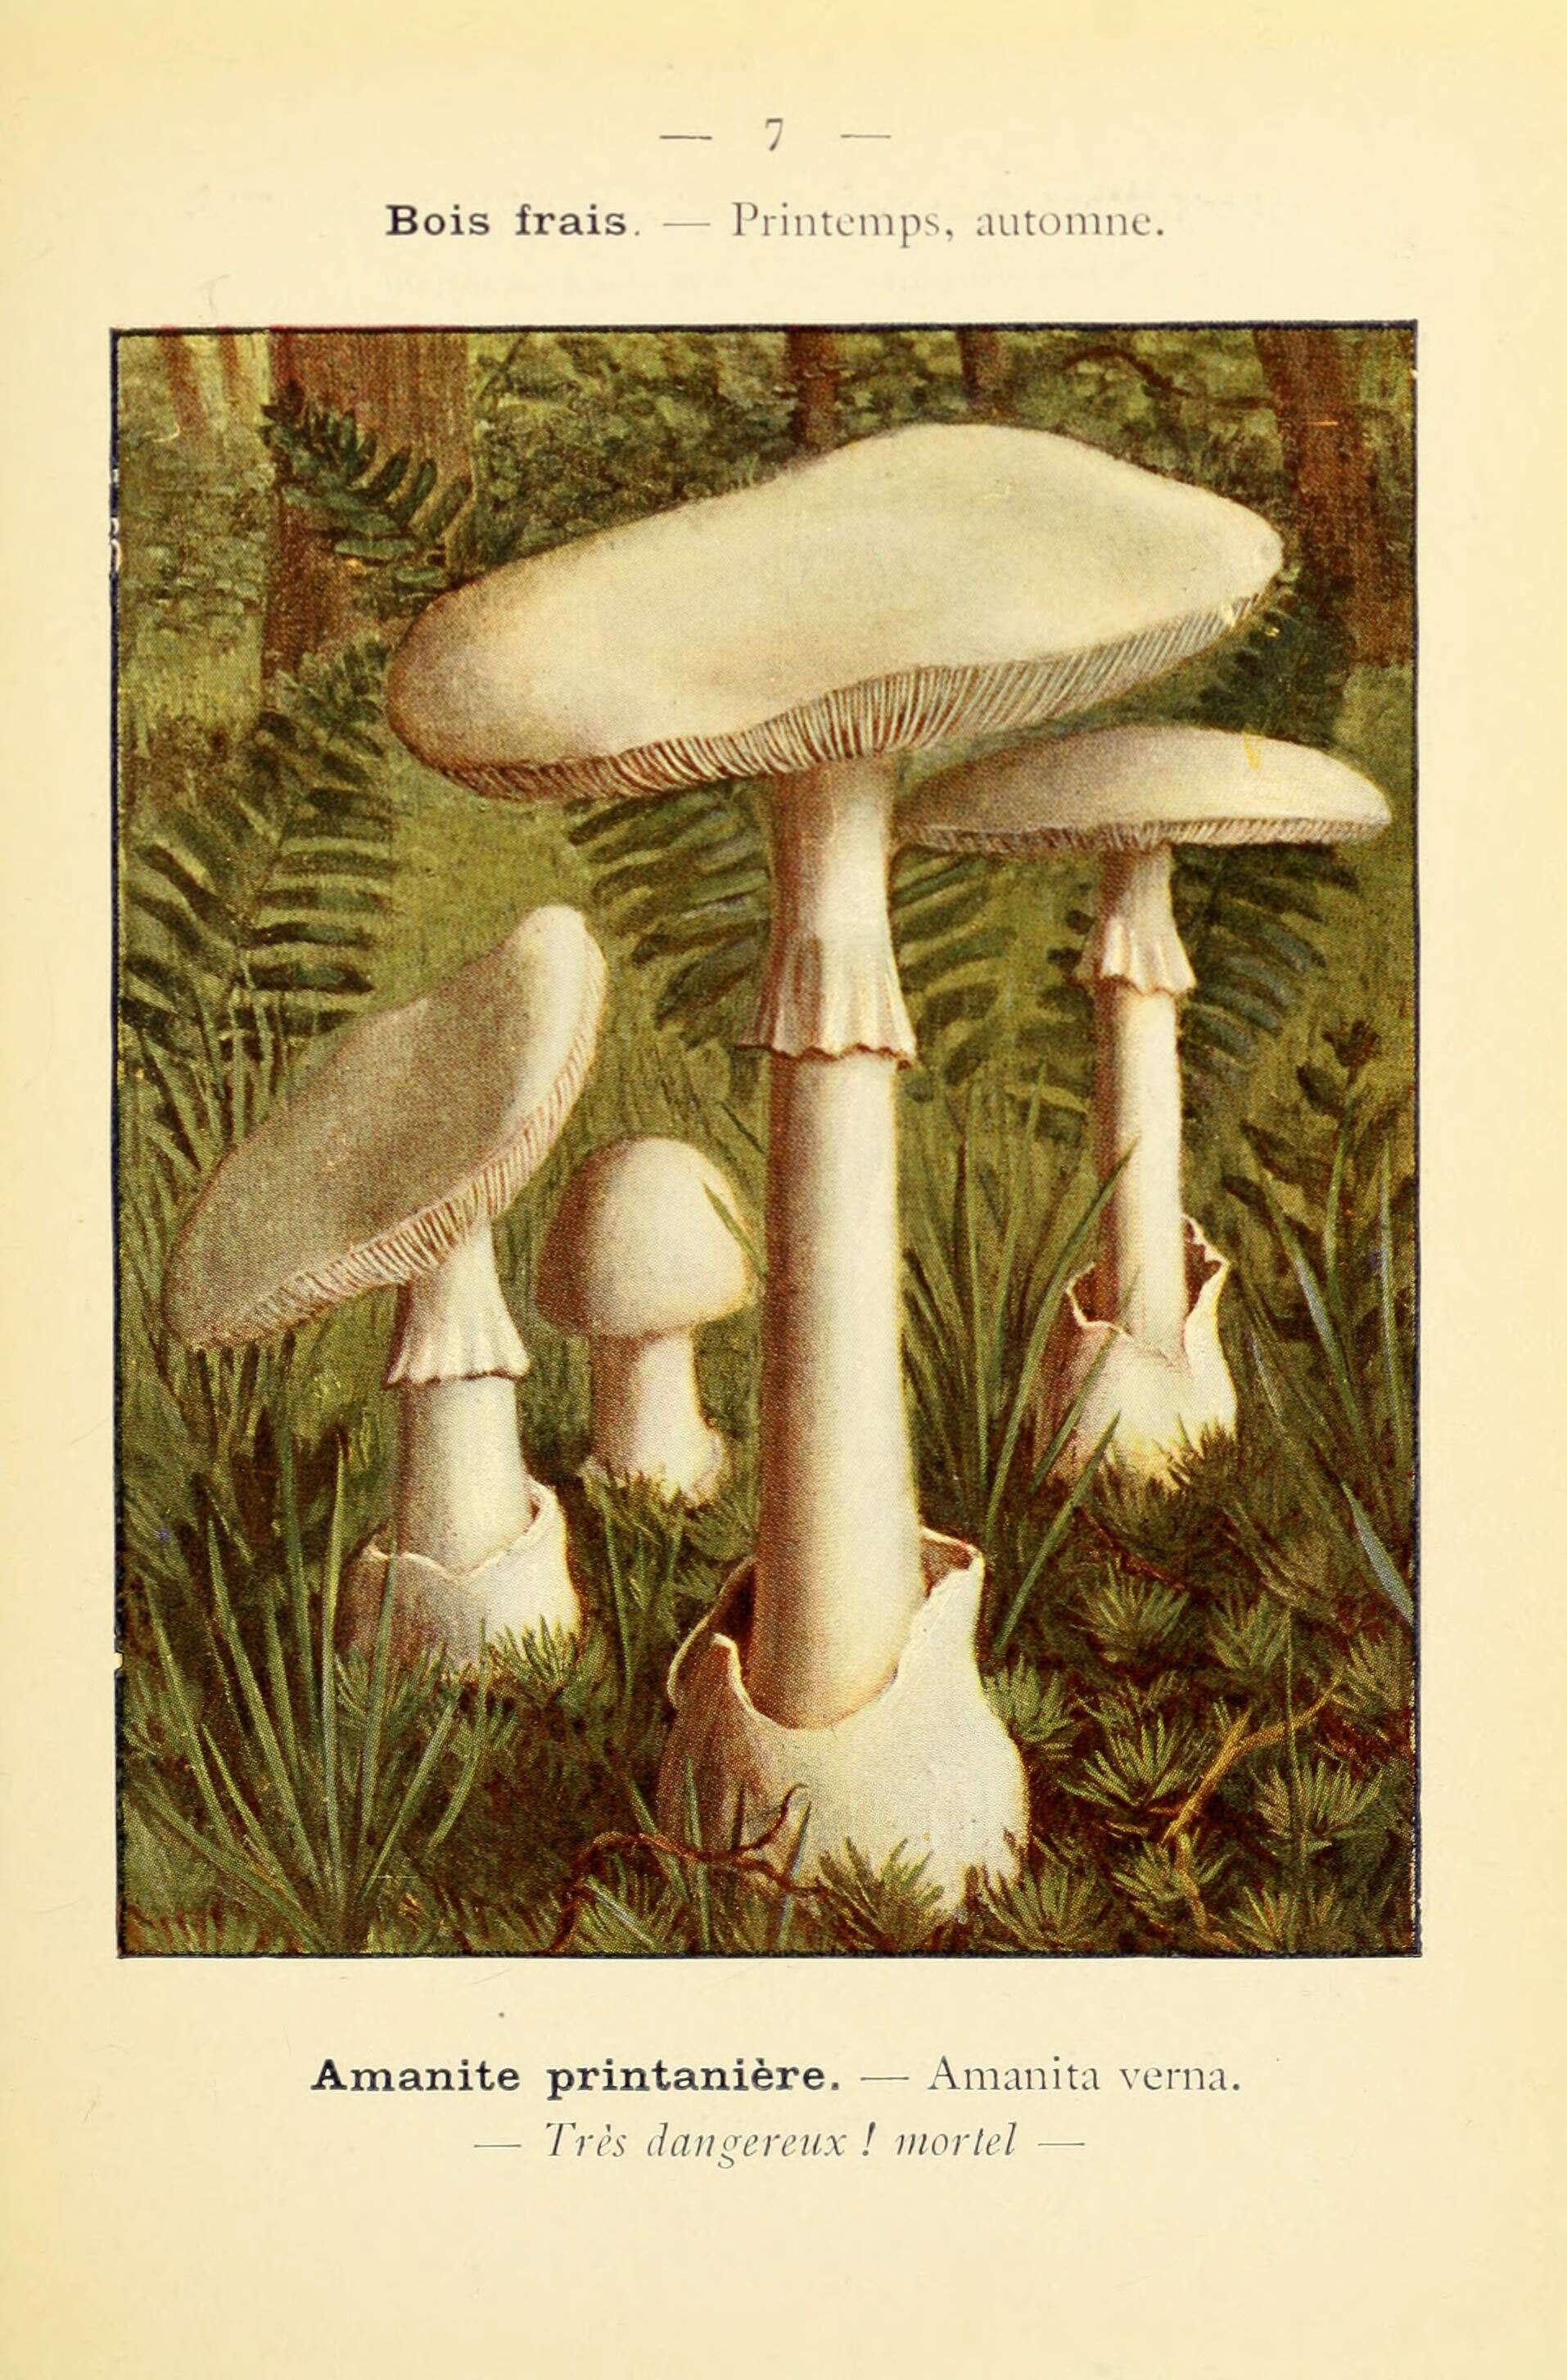 Image of Fool's Mushroom